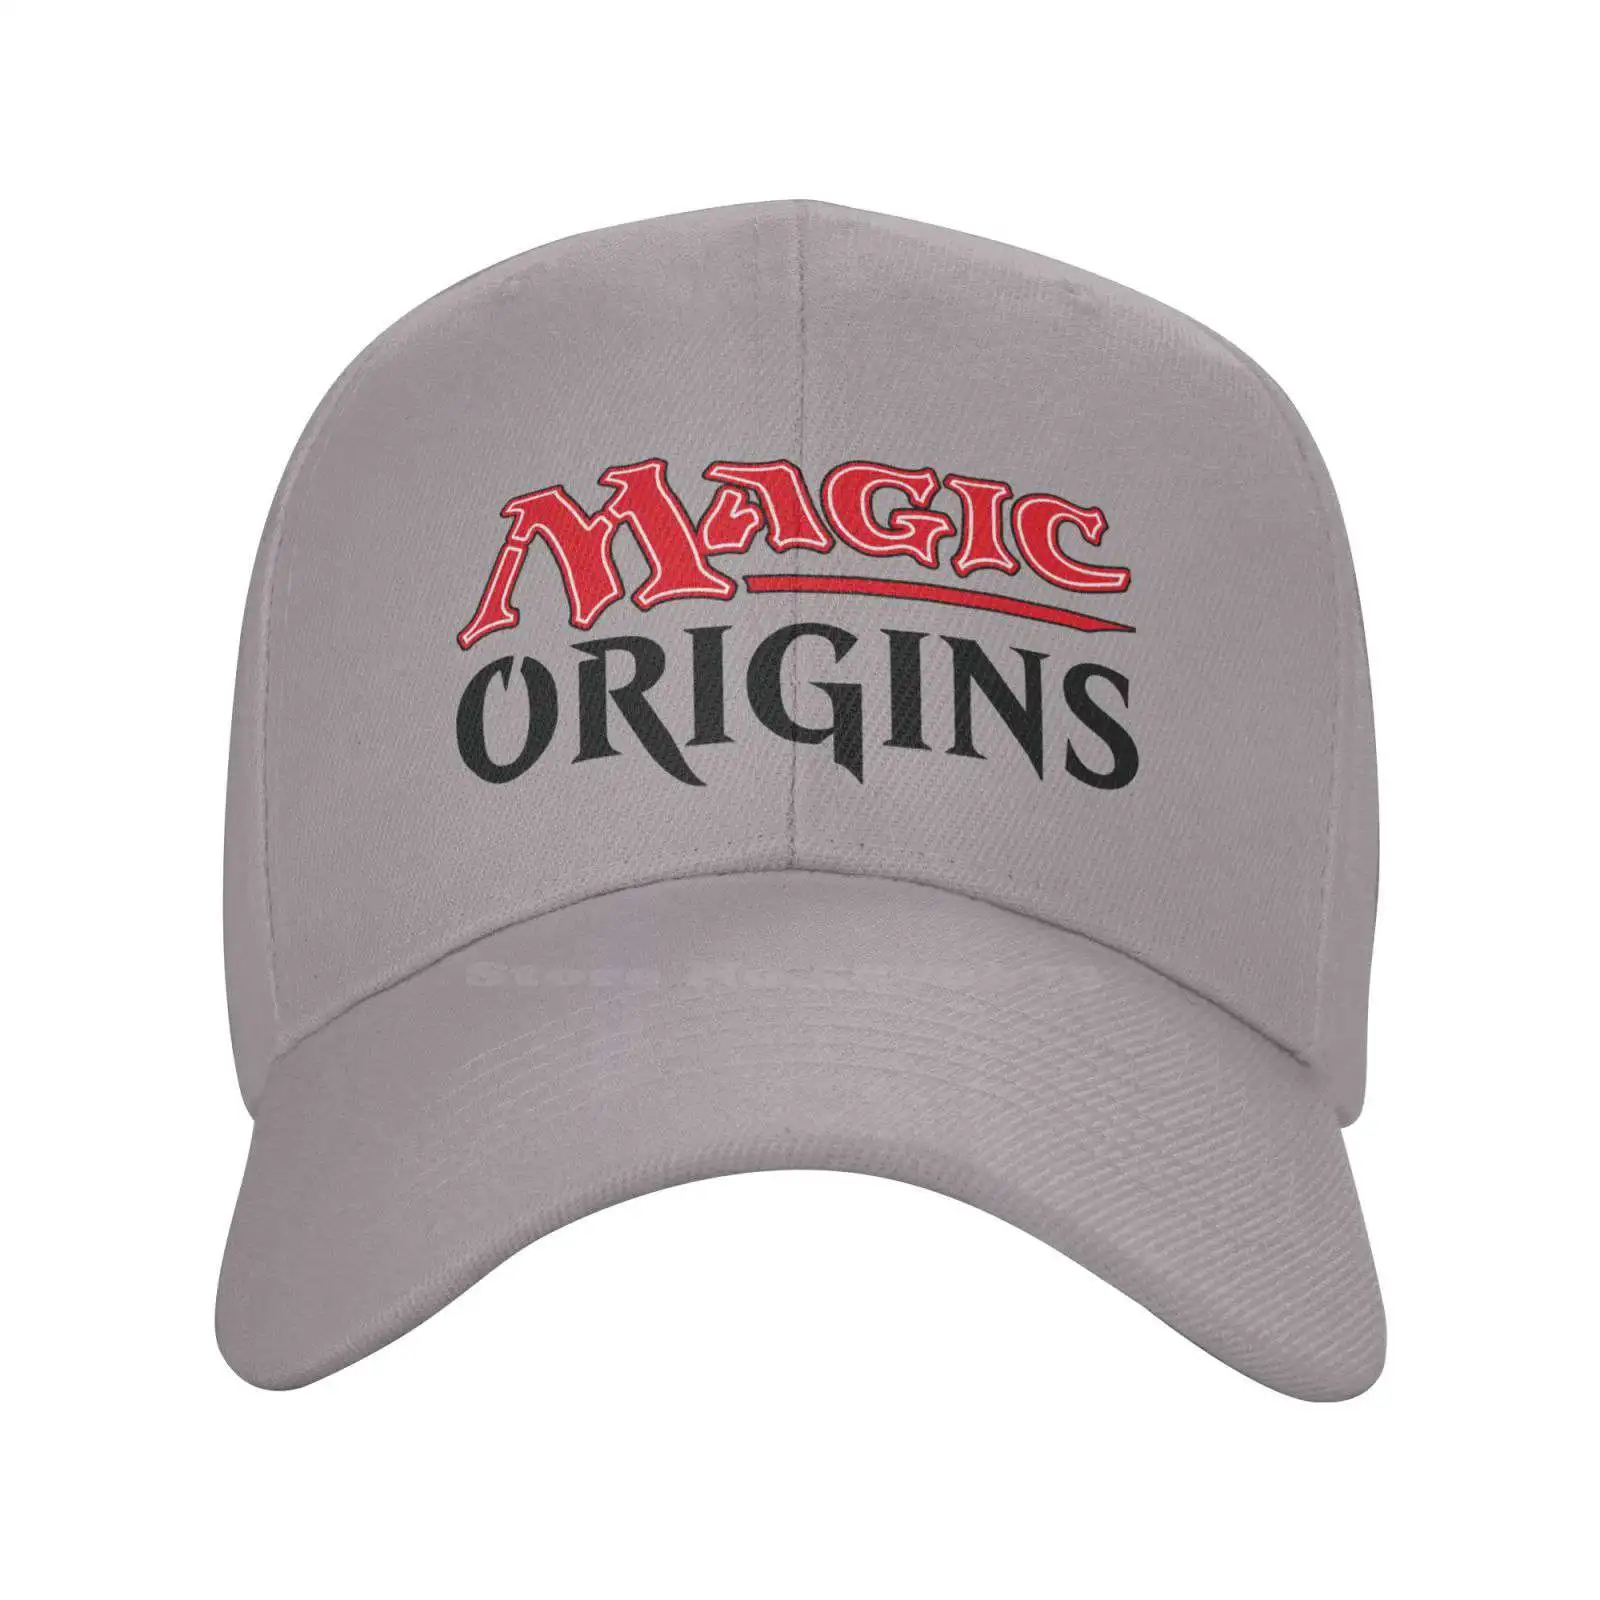 

Повседневная джинсовая бейсбольная кепка Magic origin с графическим логотипом